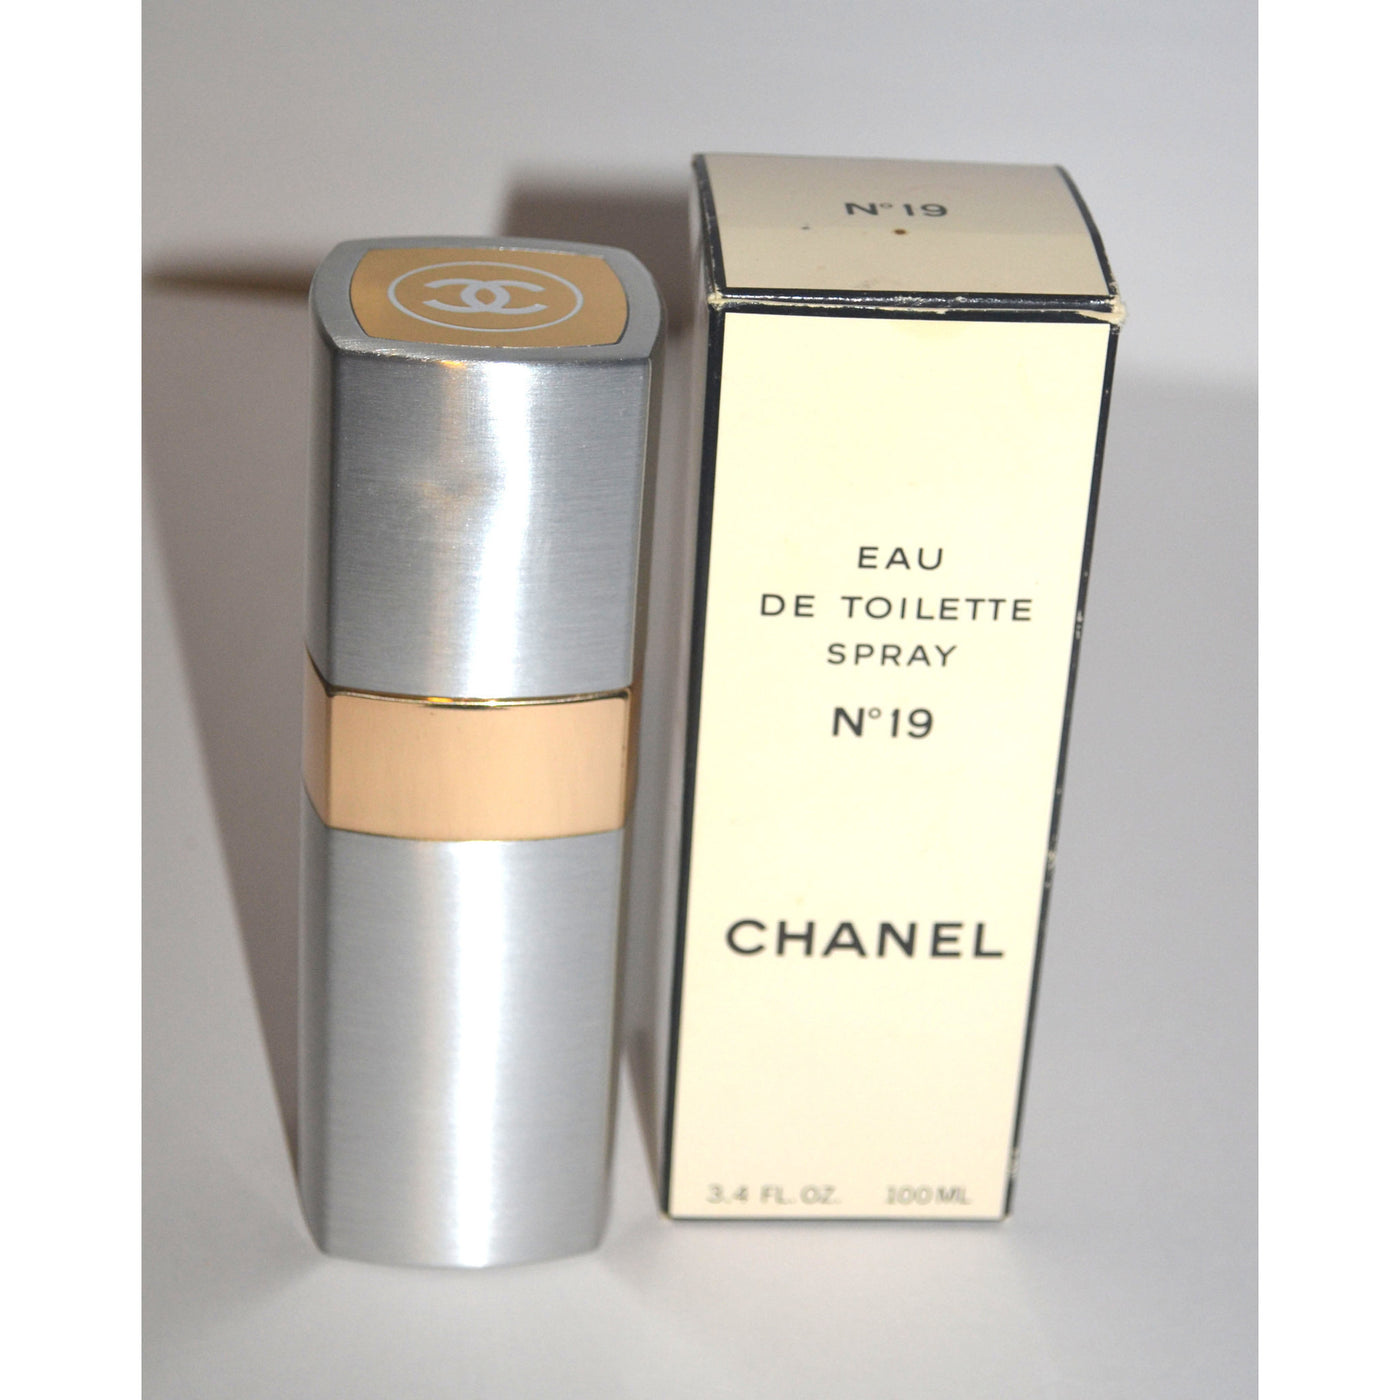 Vintage Chanel No 19 Eau De Toilette Spray Refillable Canister